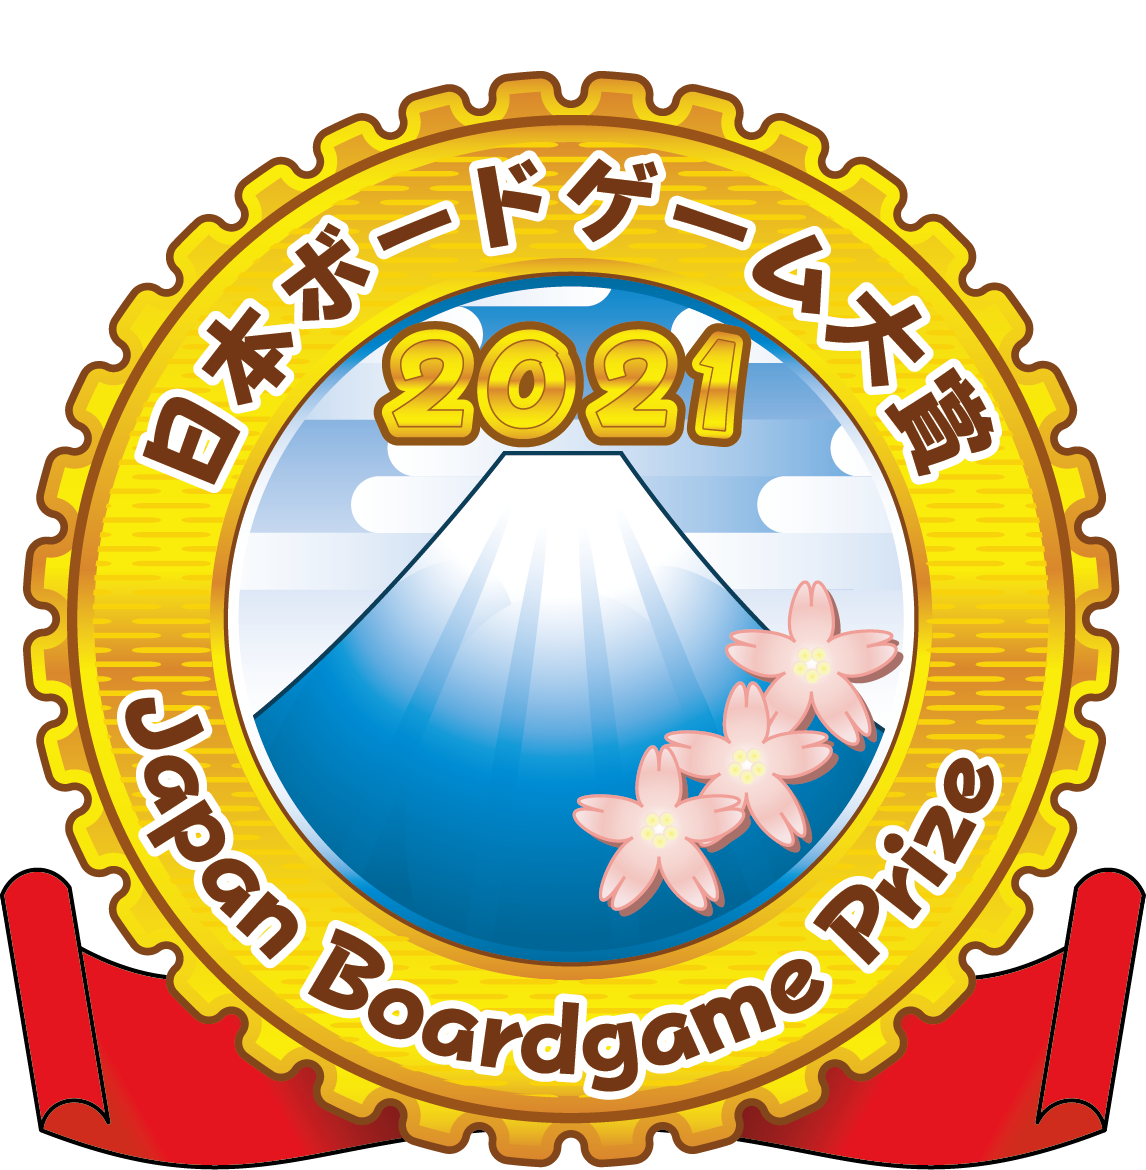 jbp2018_logo_M.jpg